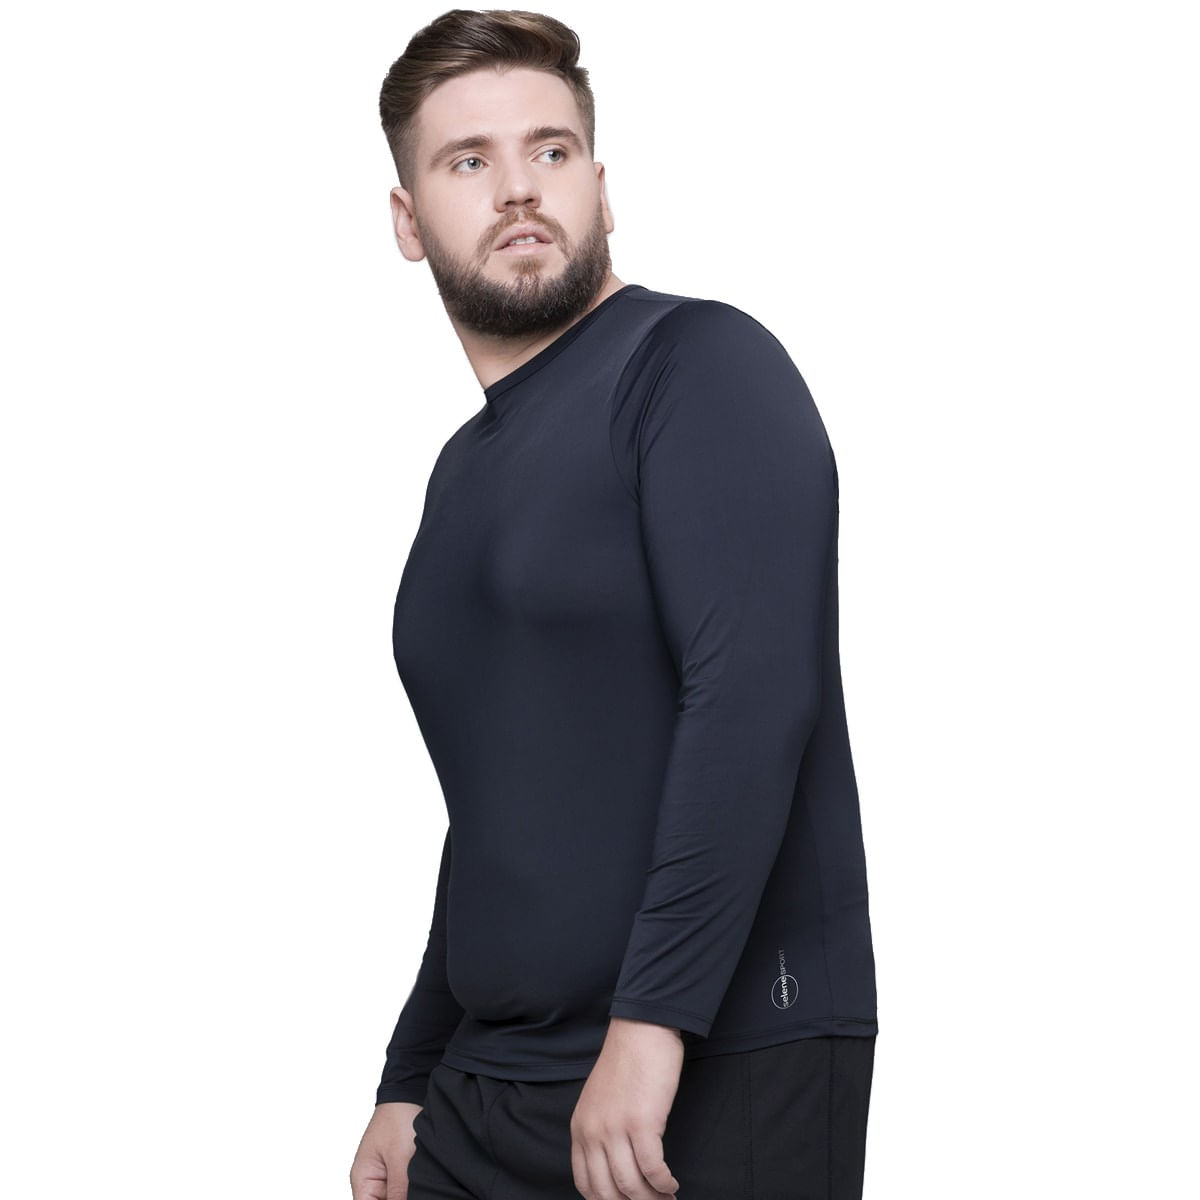 Camiseta Termica Masculina Plus Size segunda Pele Proteção Uv 03 - Kaena  Multimarcas